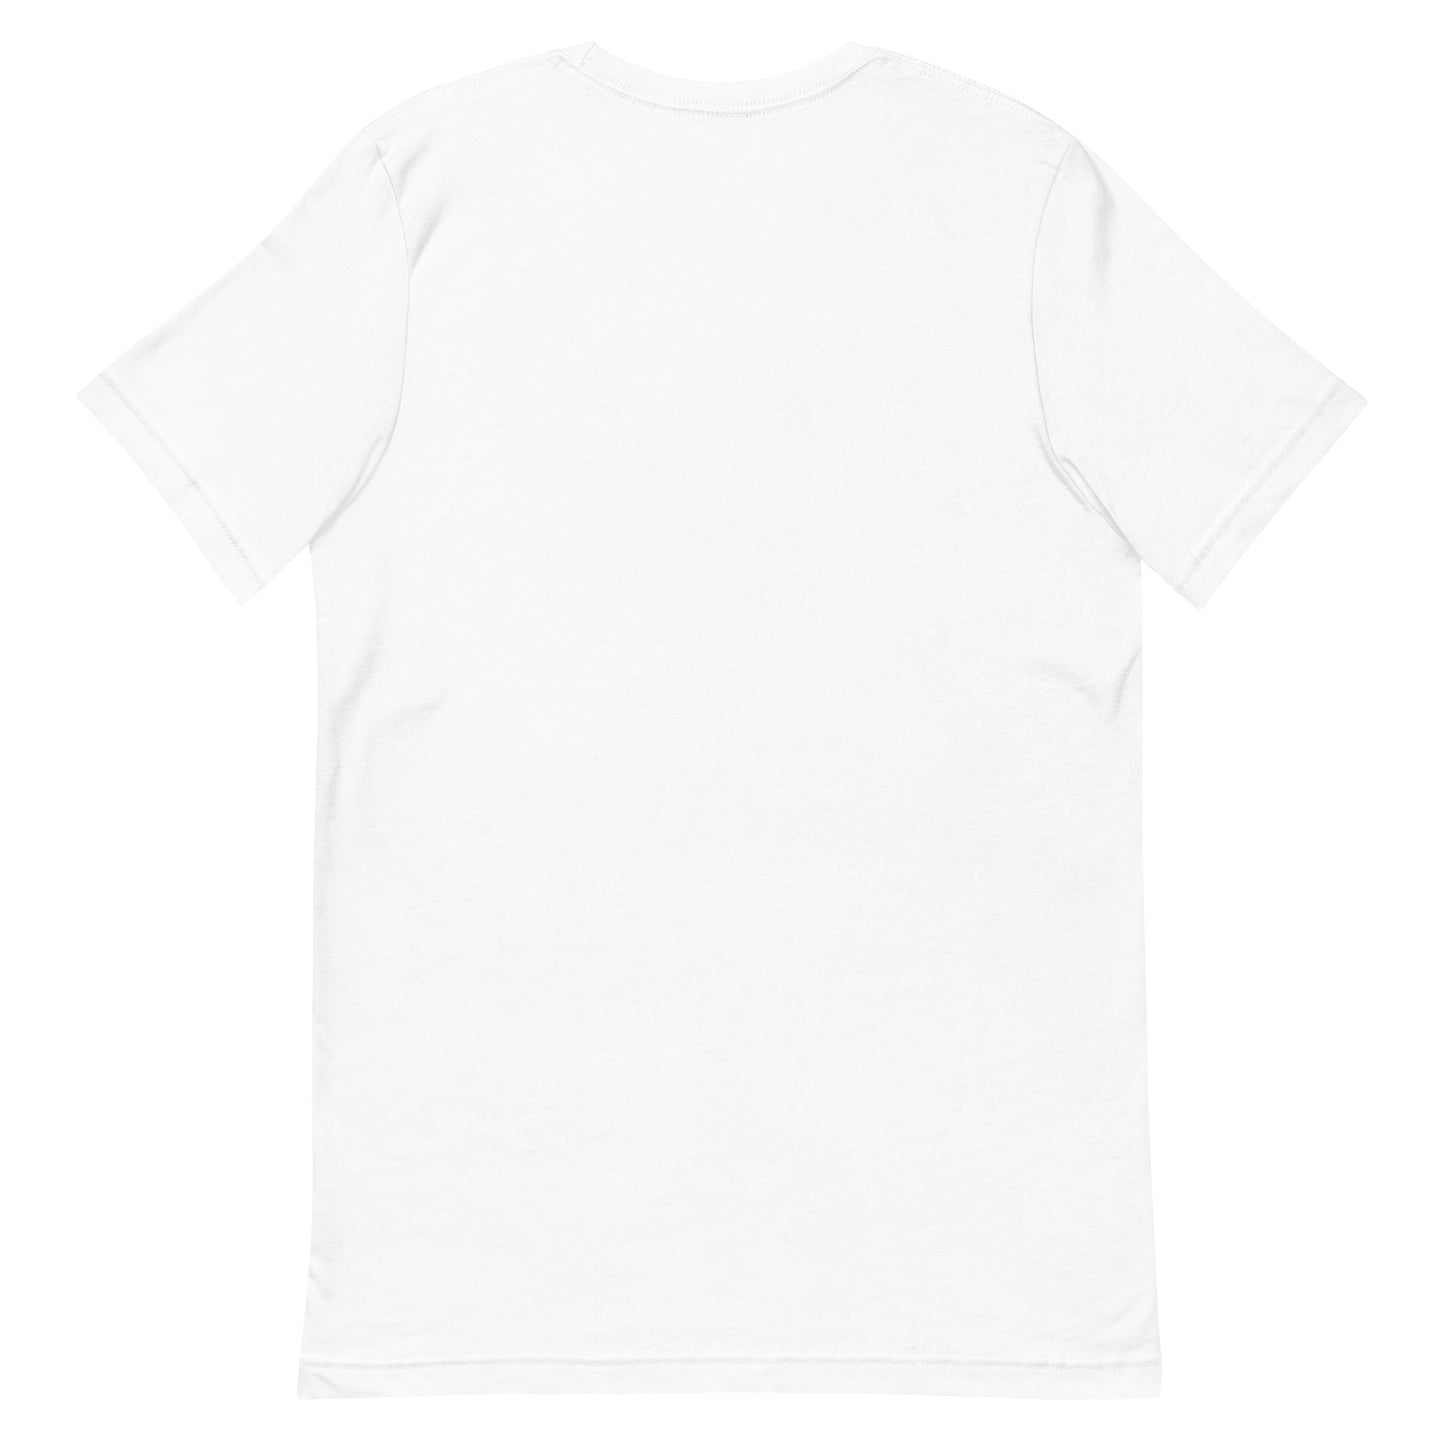 Unisex t-shirt "36 TAUE DORI" White